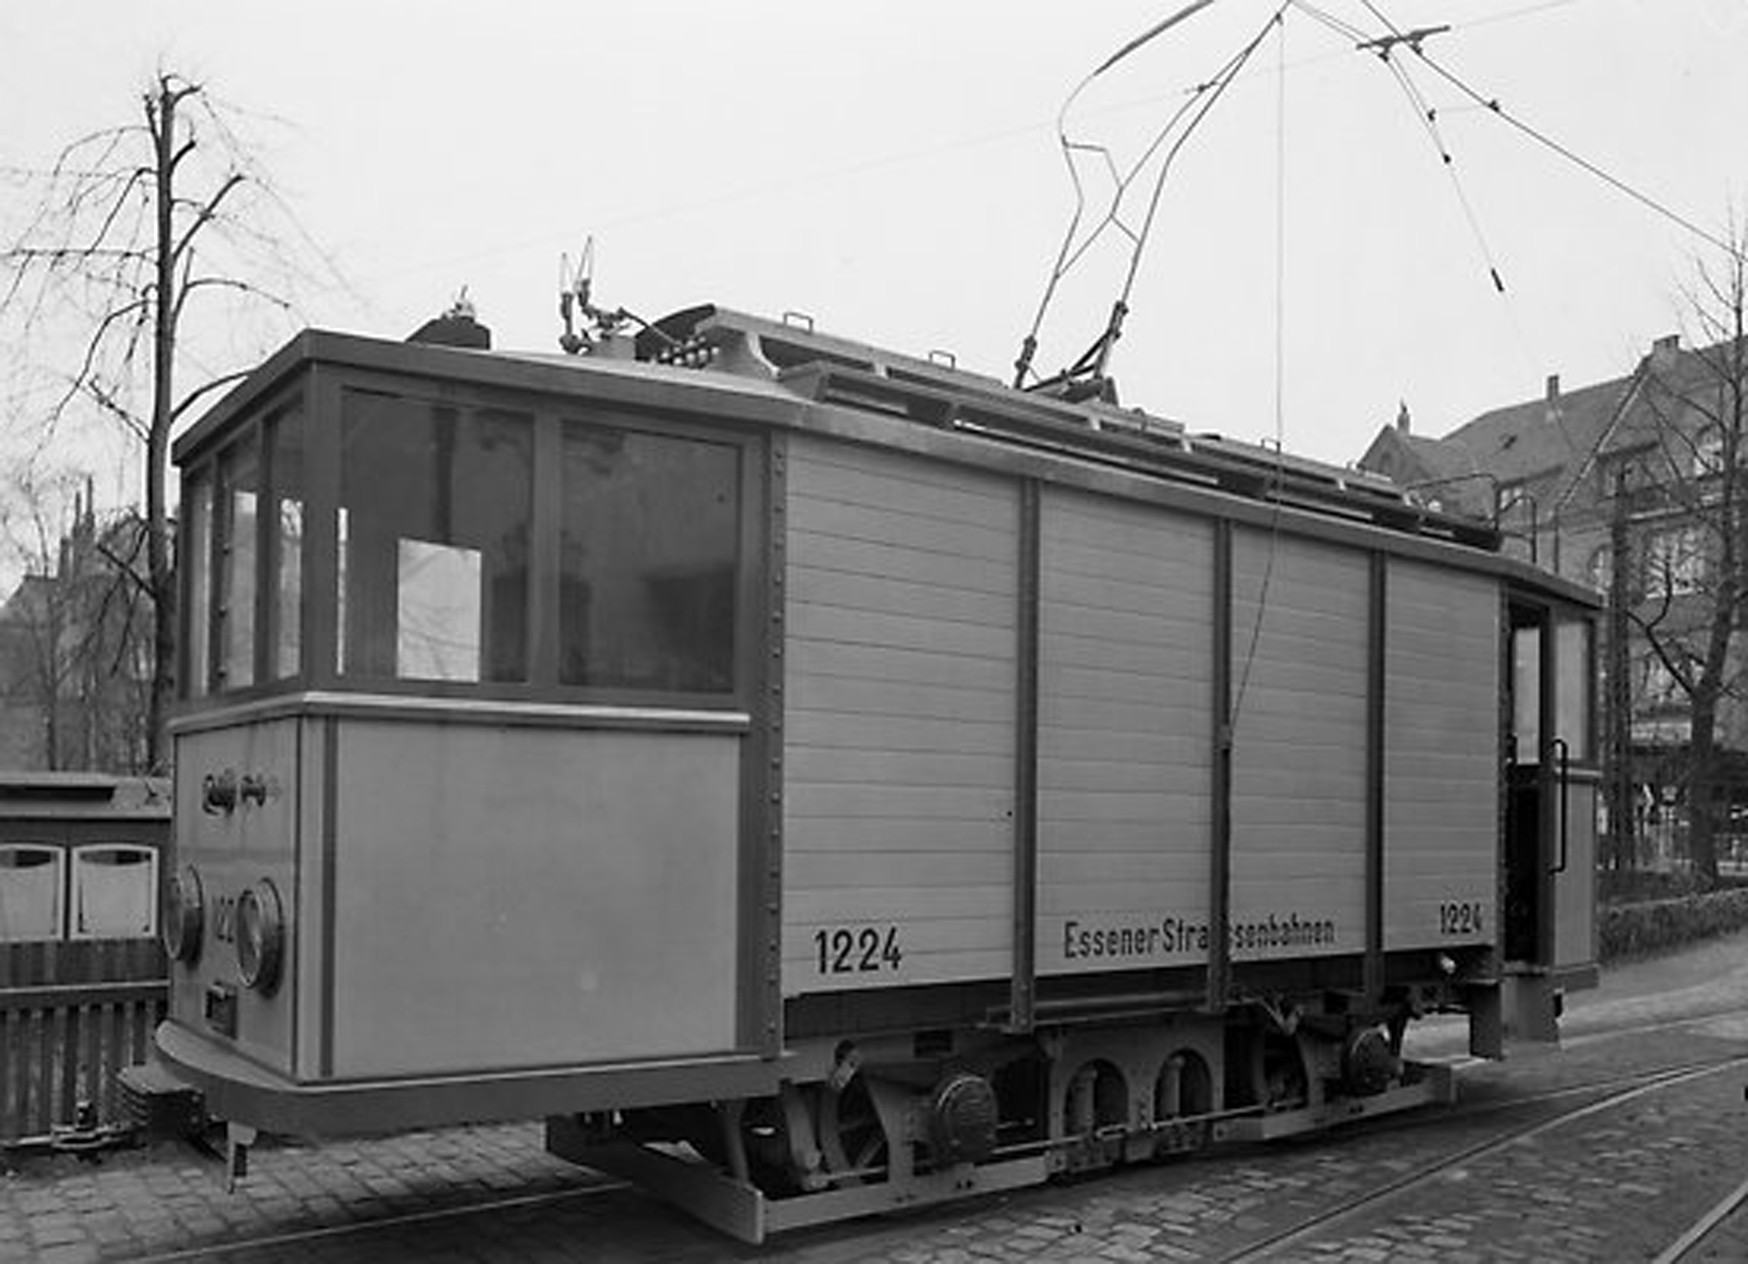 Schienenschleifwagen 1224. Wurde 1930 zum Schienenschleifwagen umgebaut und 1963 ausgemustert.(Aufnahmedatum unbekannt).